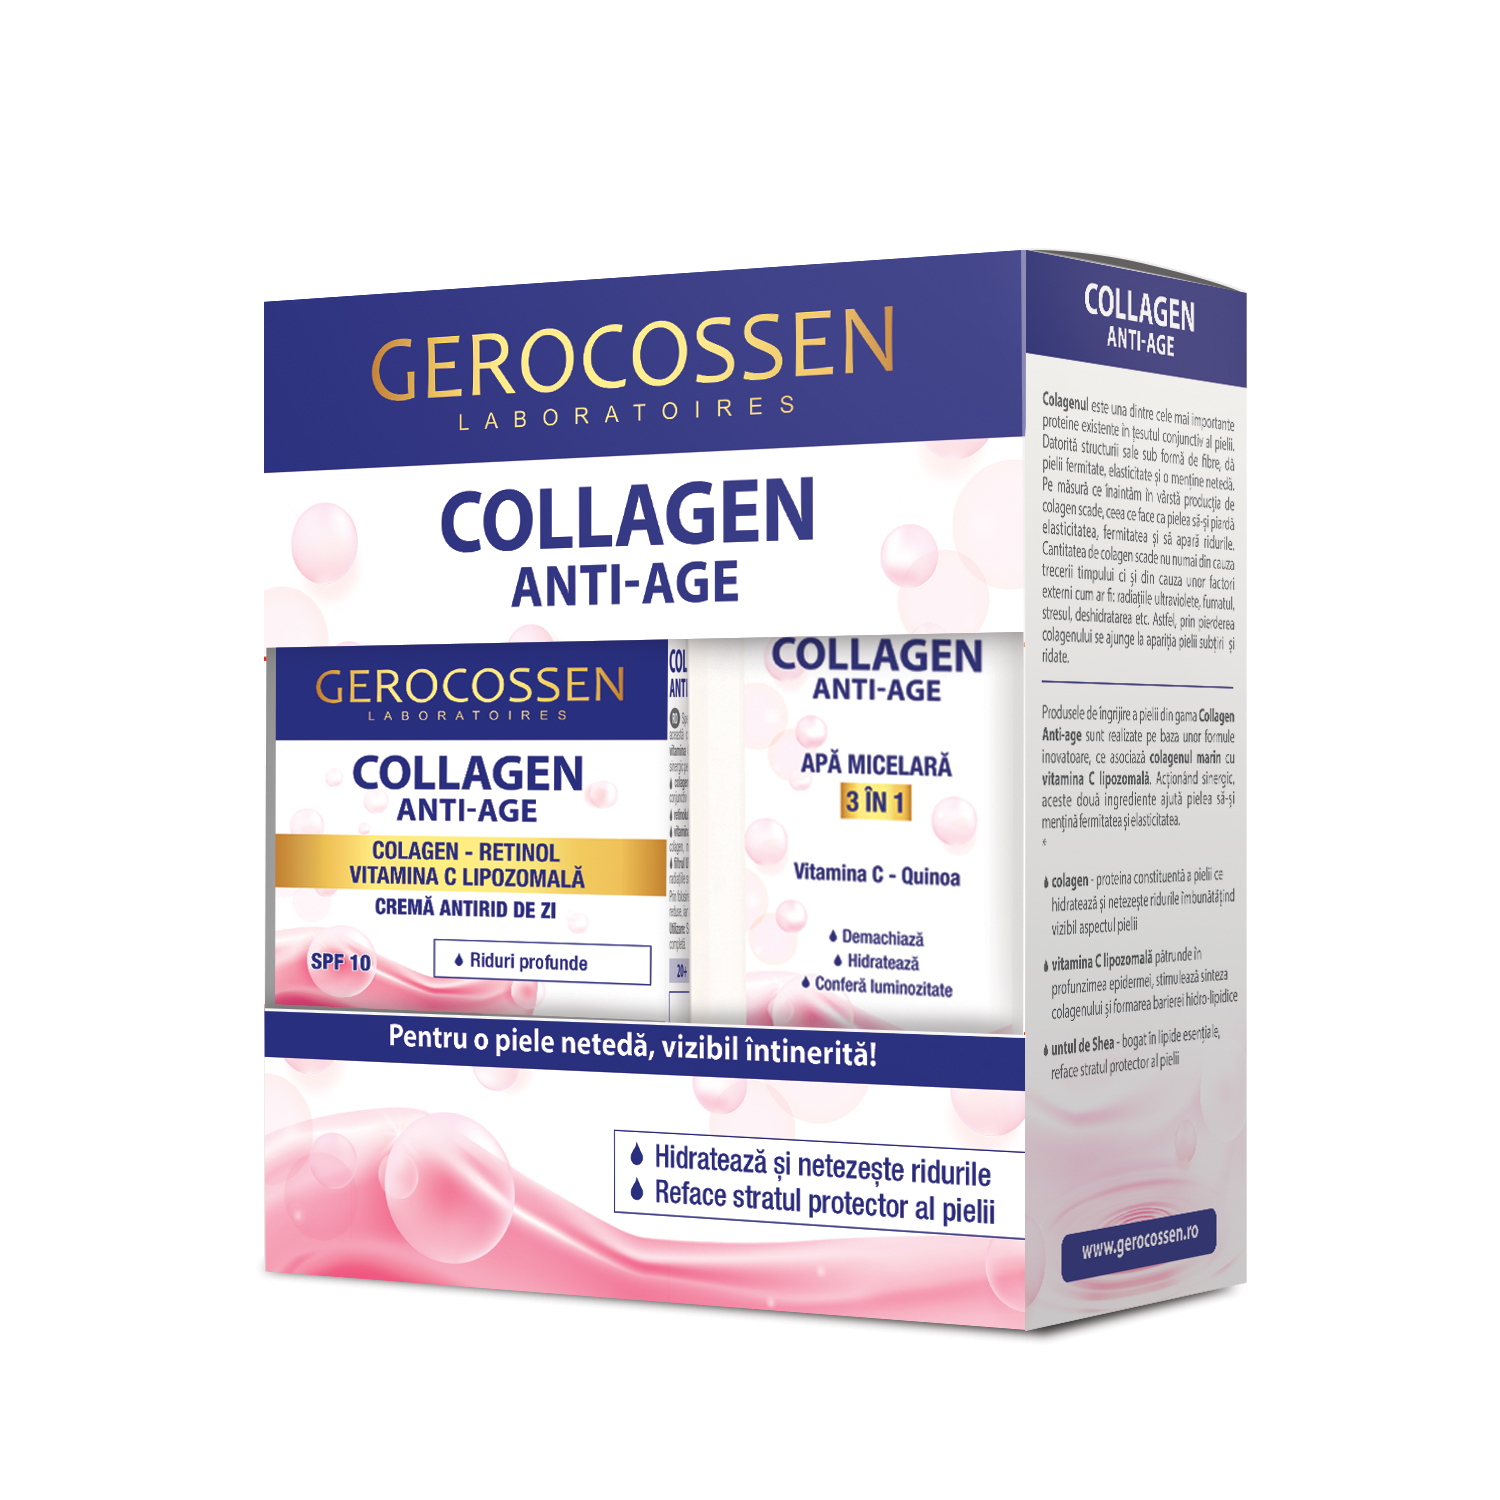 Pachet Crema antirid de zi 50 ml + Apa micelara 300 ml Collagen, Gerocossen